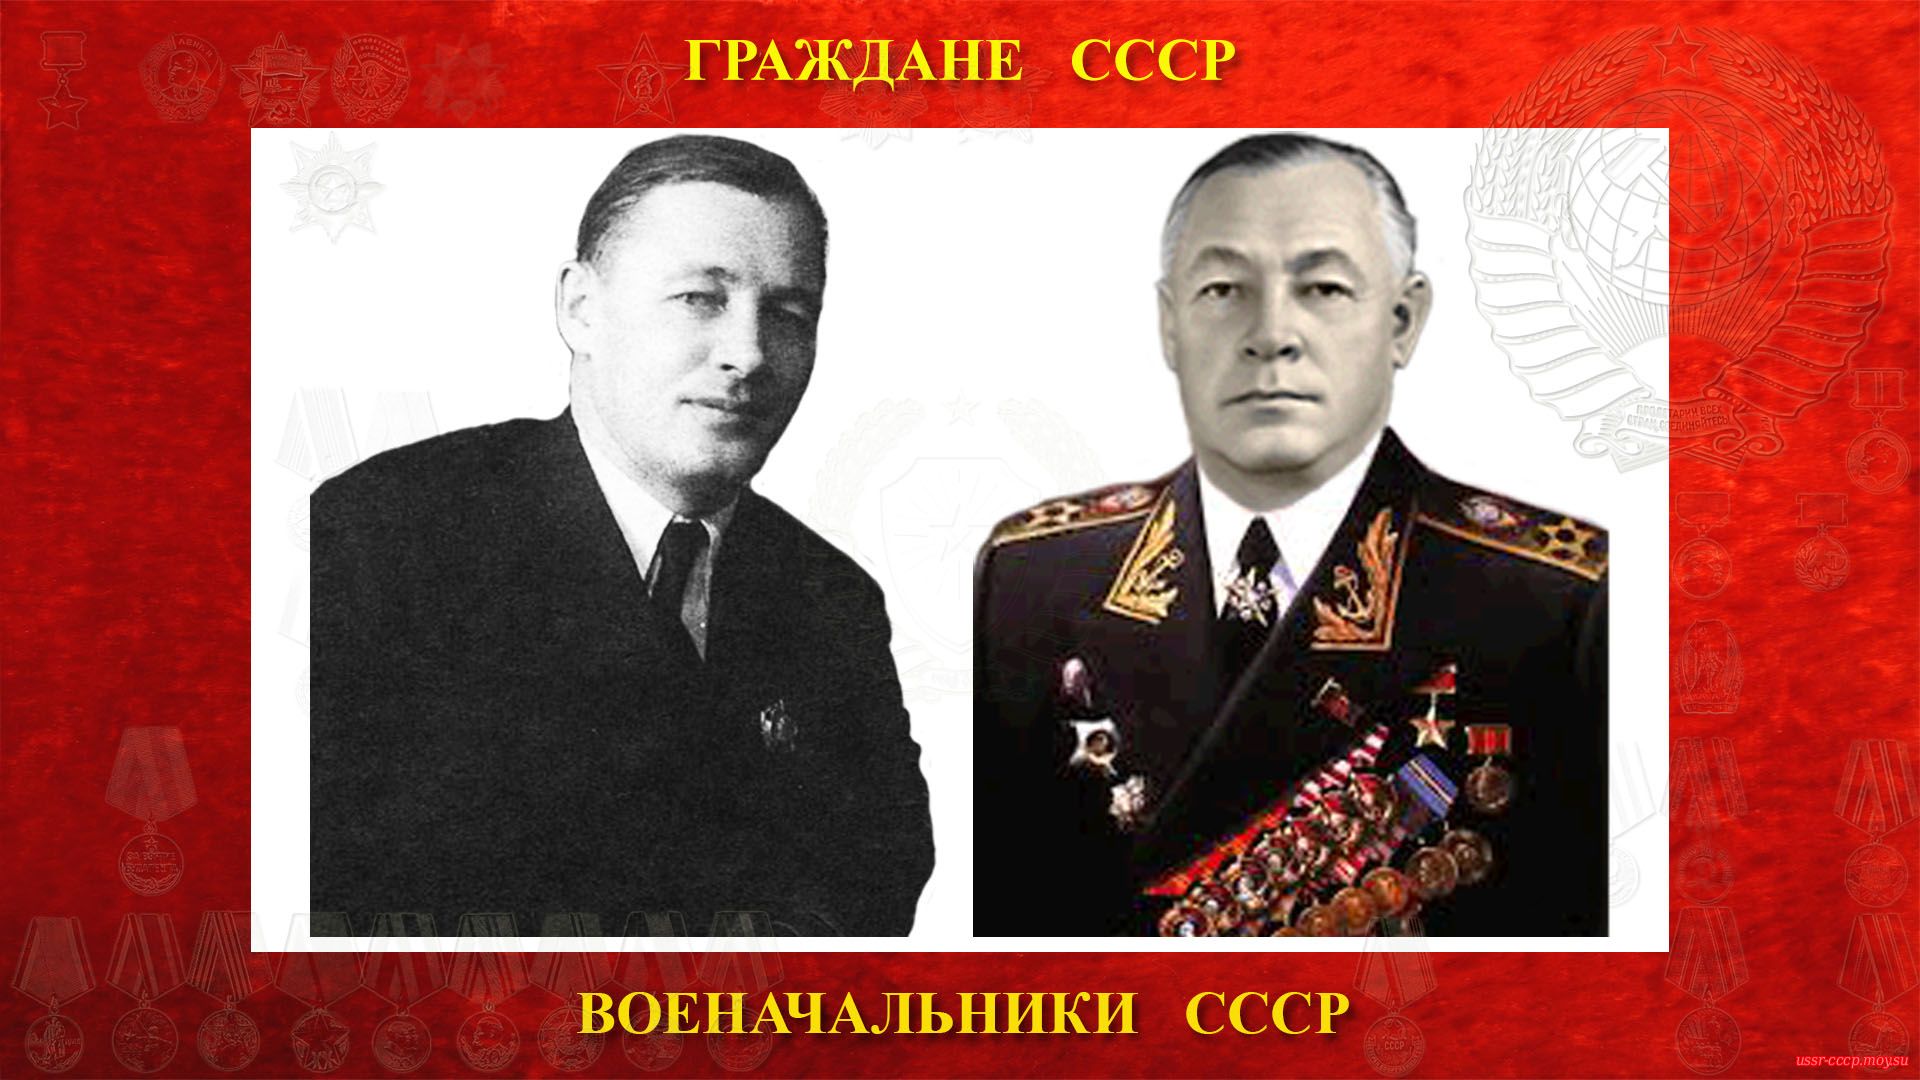 Кузнецов Николай Герасимович (биография)